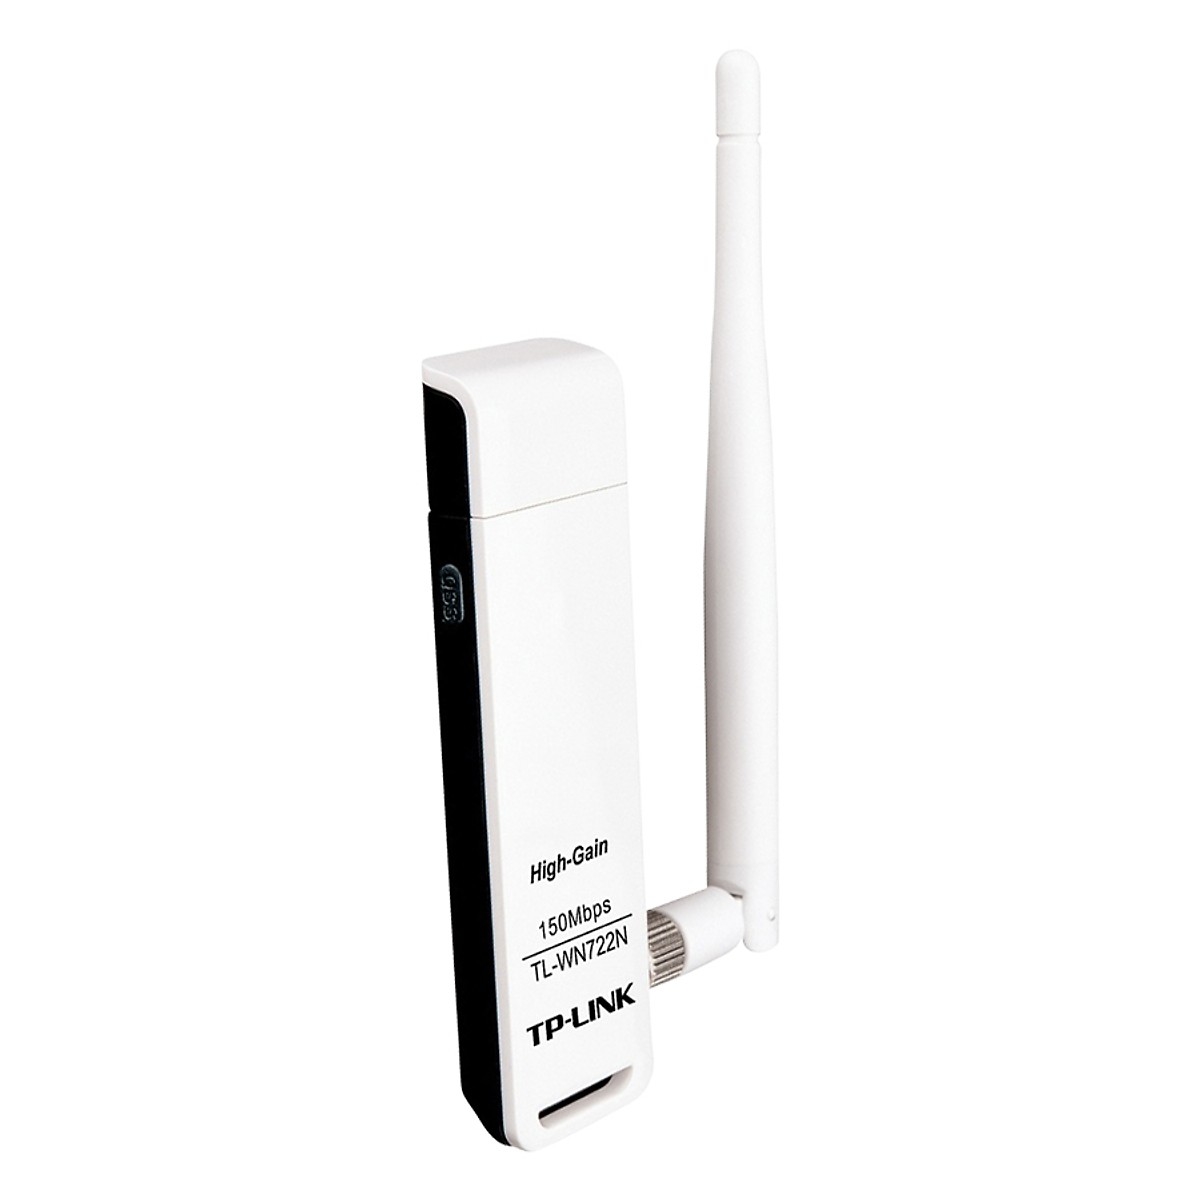 Bộ thu wifi TP-Link TL-WN722N - USB Wifi (high gain) tốc độ 150Mbps